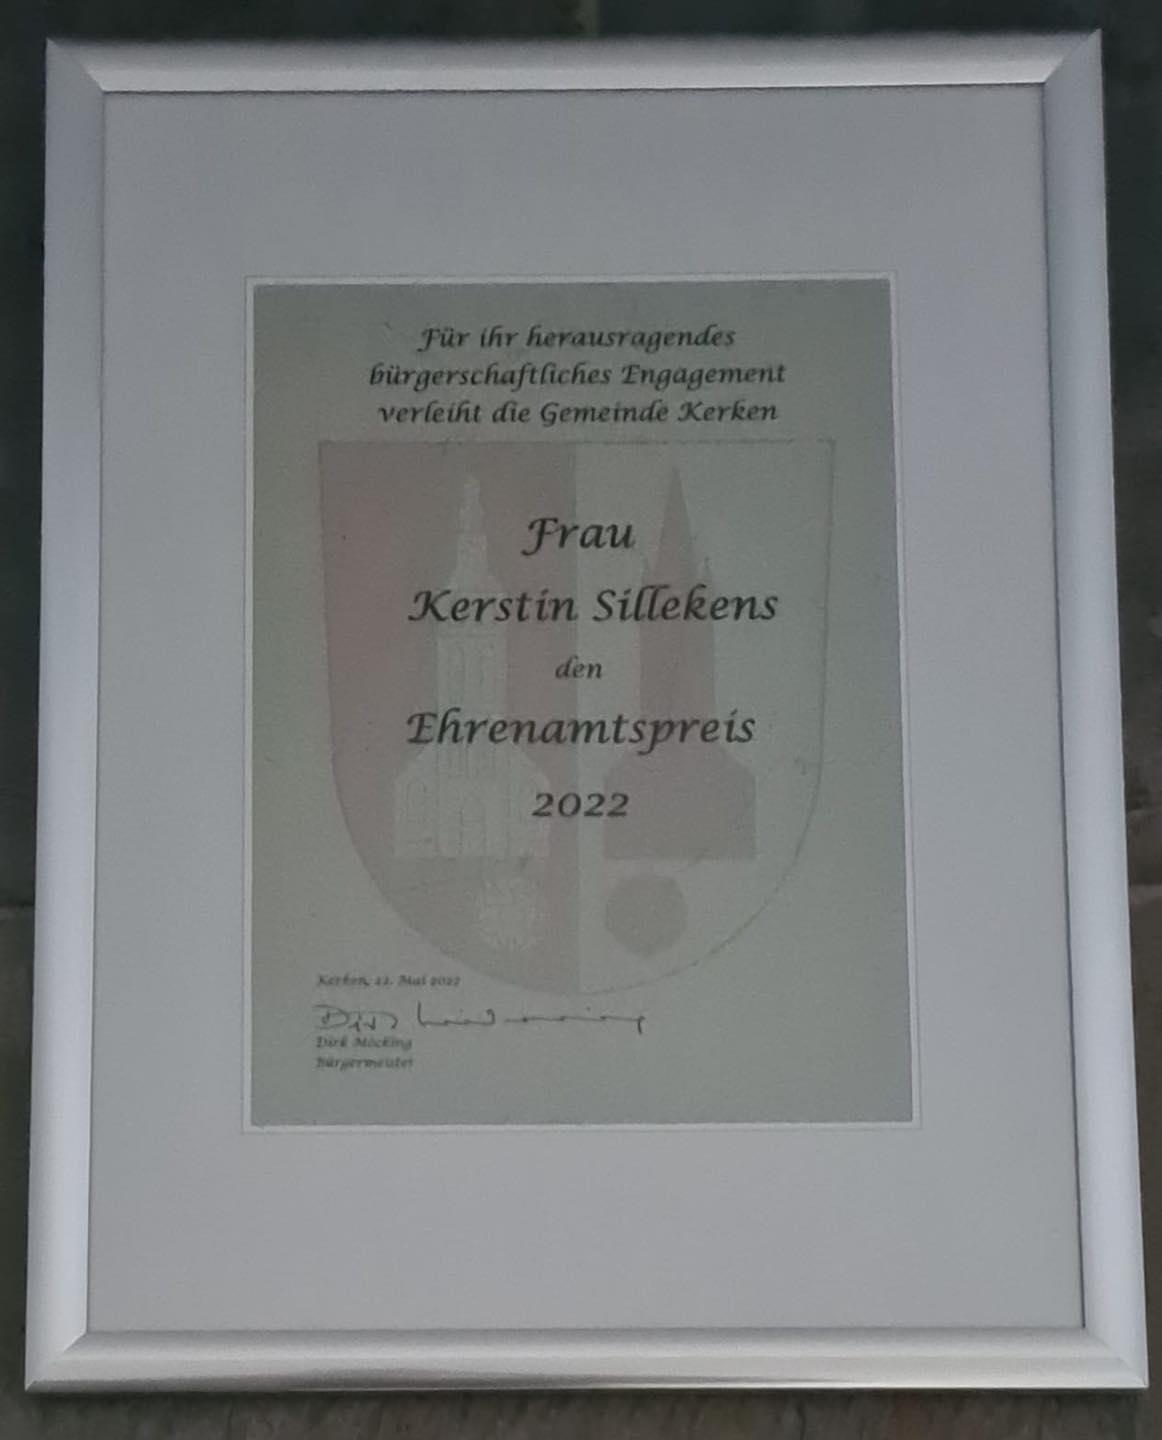 Kerstin Sillekens bekommt den Ehrenamtspreis der Gemeinde Kerken verliehen